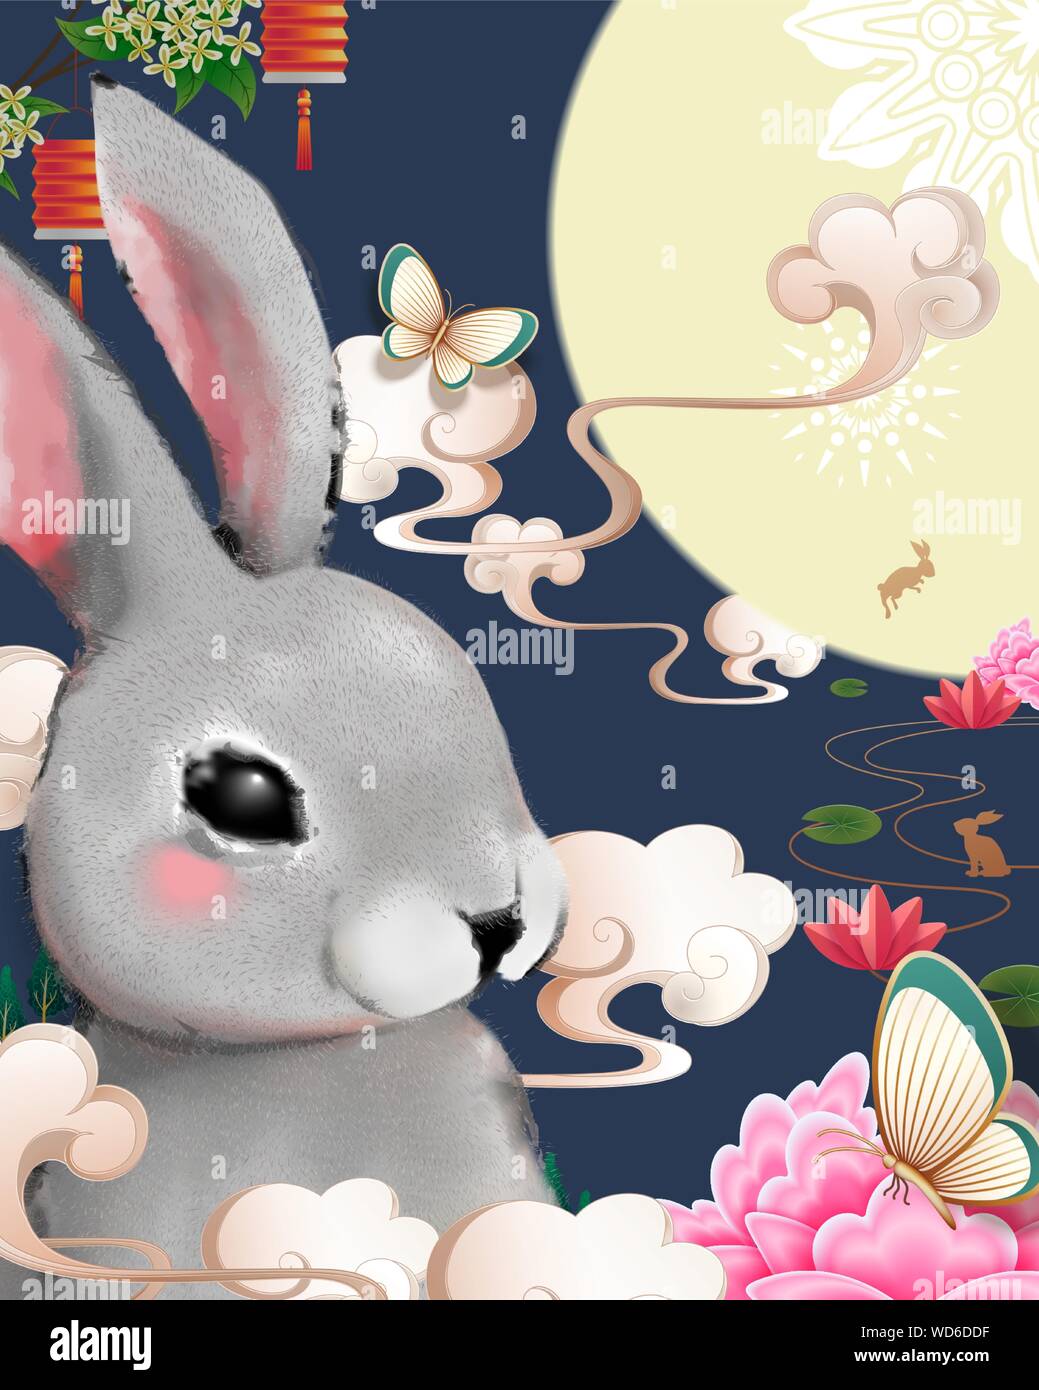 Heureux de l'affiche du festival de mi-automne avec lapin duveteux gris géant sur fond bleu Illustration de Vecteur